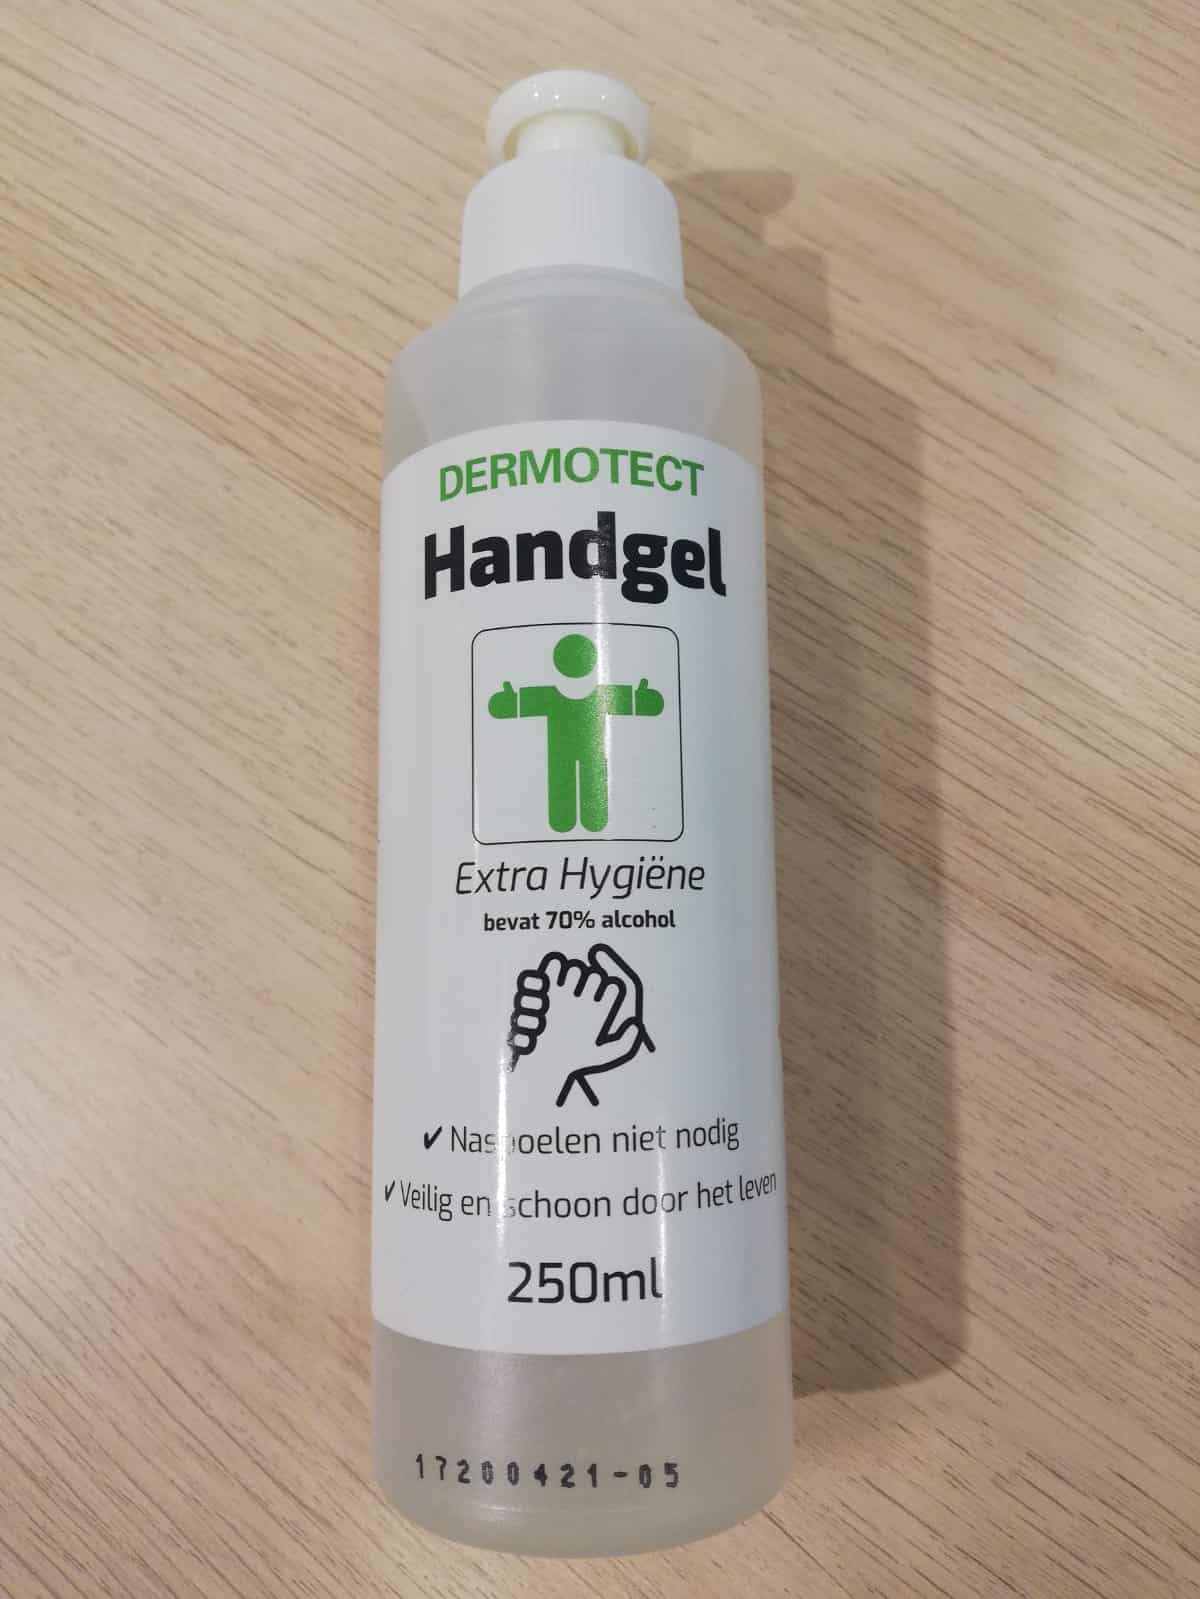 Dierenapotheek.nl Handdesinfectiemiddel - Dermotect 500 ml 70% alcohol